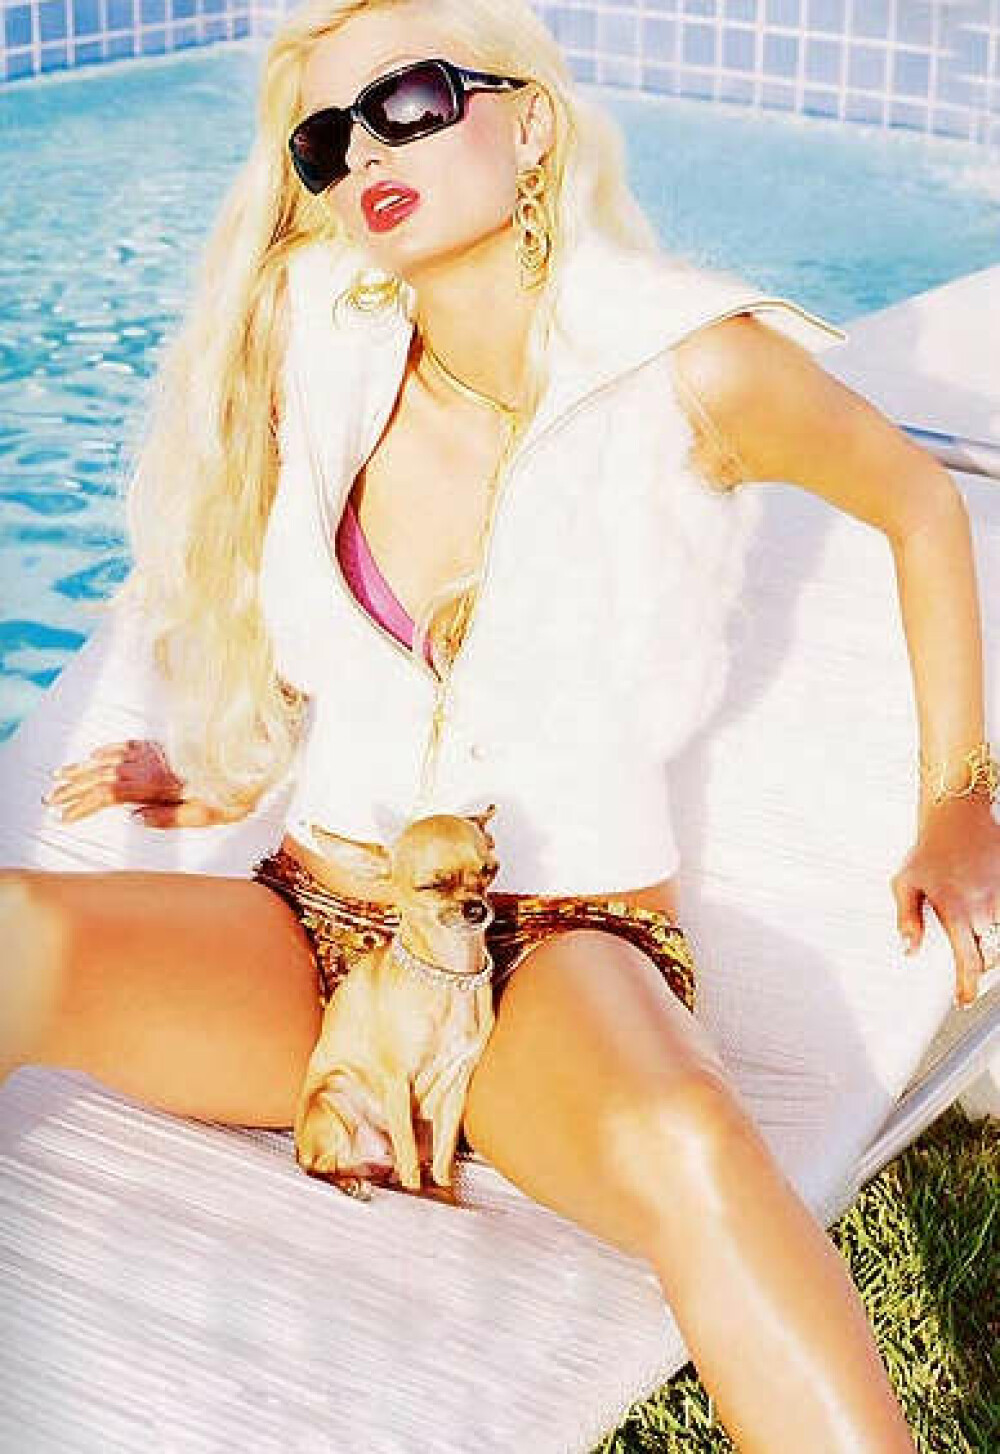 Oopss! Ce cauta catelul in bikinii lui Paris Hilton? - Imaginea 2